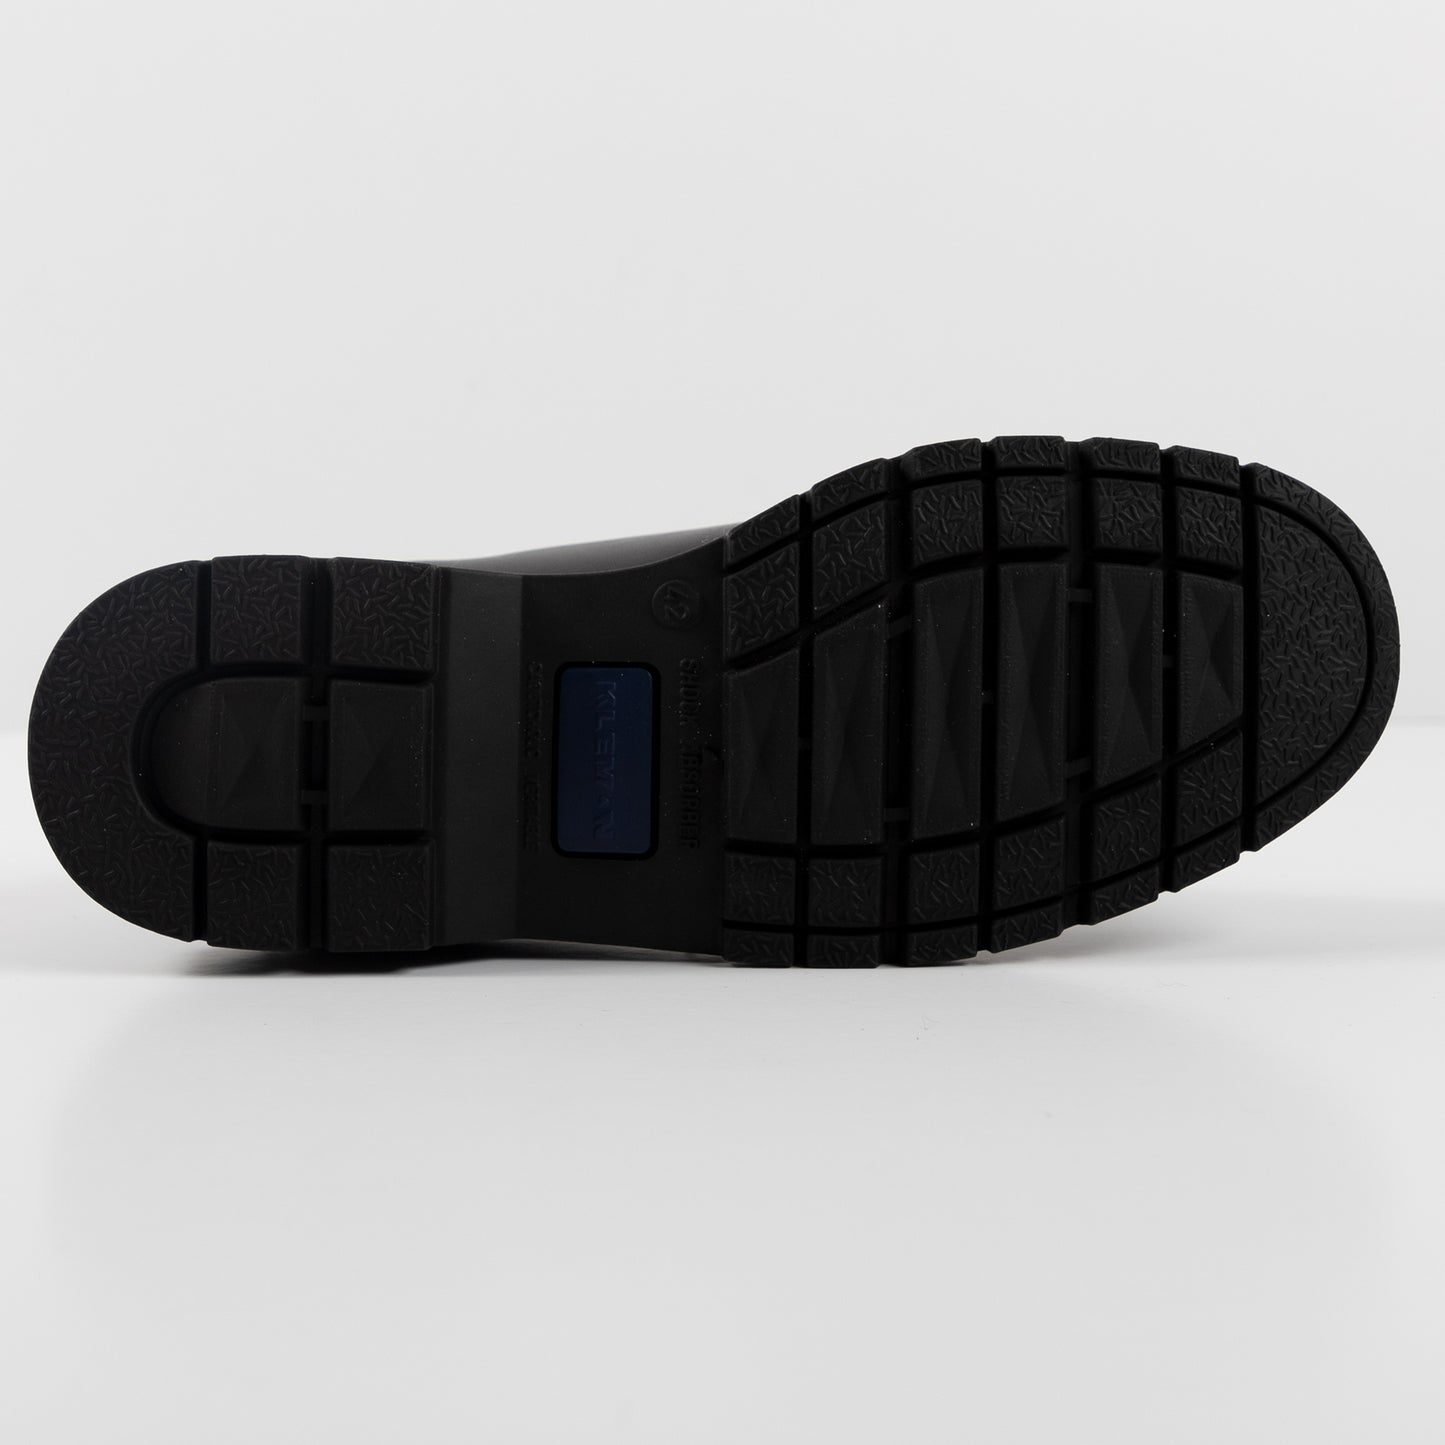 Kleman Padrini Derby Footwear Shoe Workwear Lace Up Black